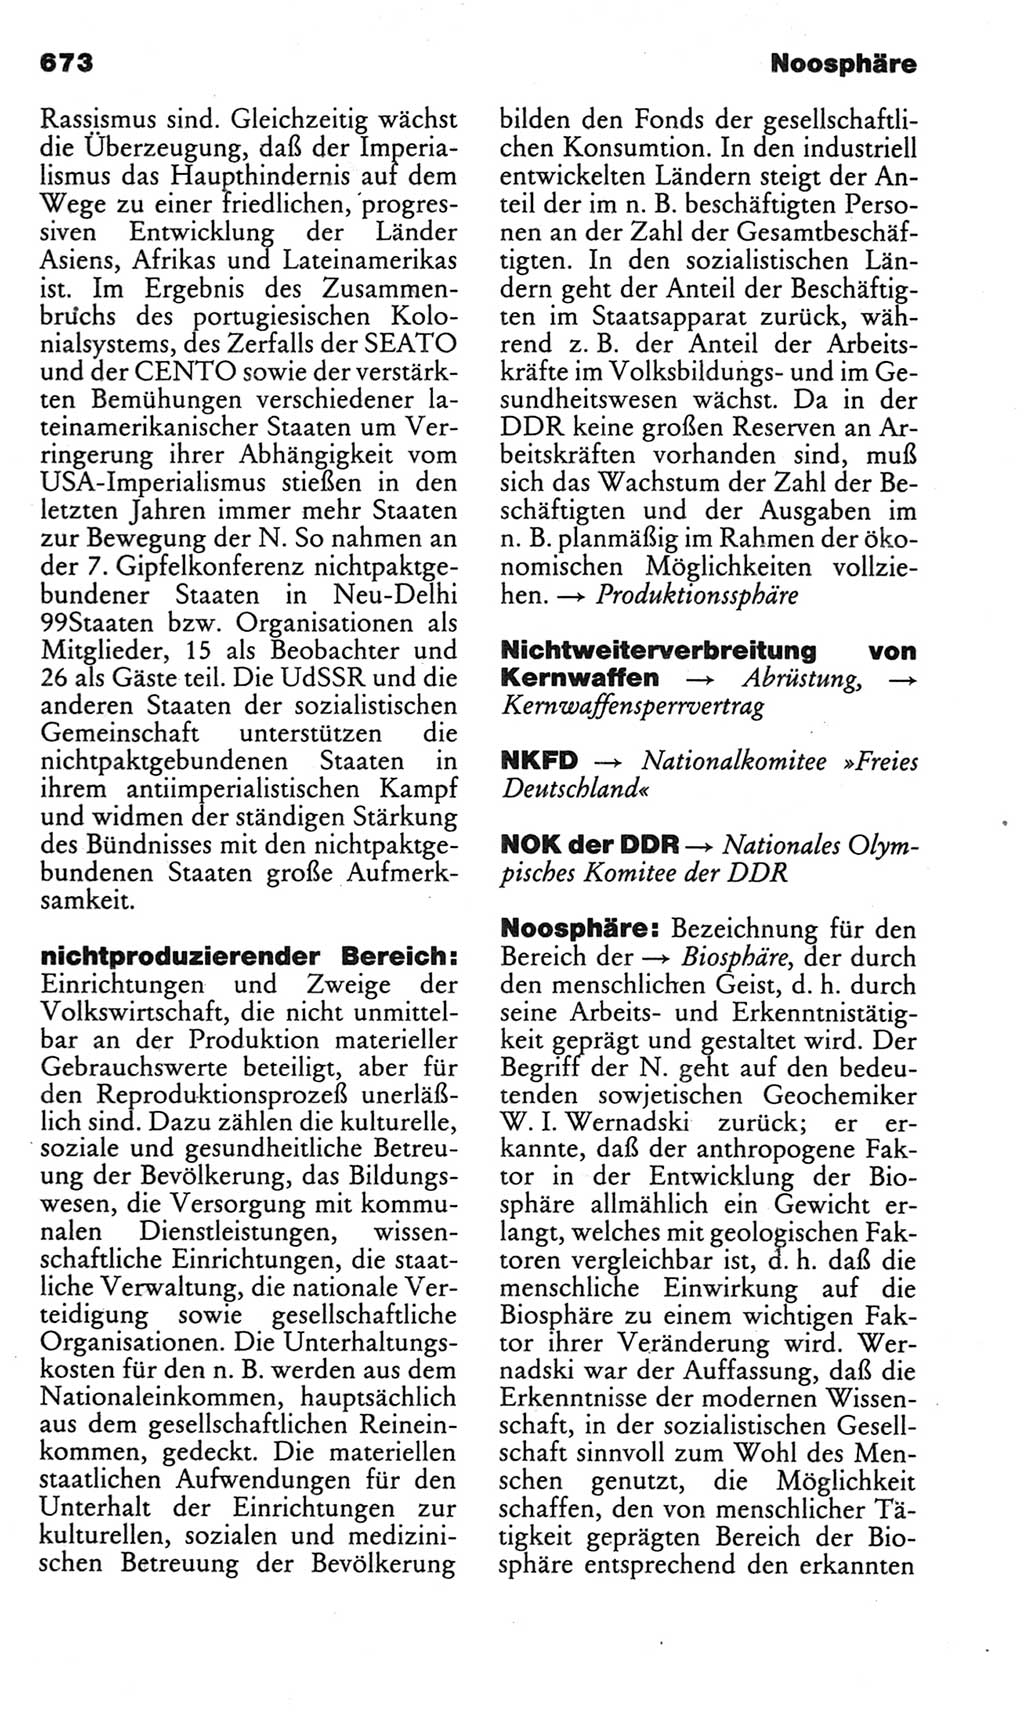 Kleines politisches Wörterbuch [Deutsche Demokratische Republik (DDR)] 1983, Seite 673 (Kl. pol. Wb. DDR 1983, S. 673)